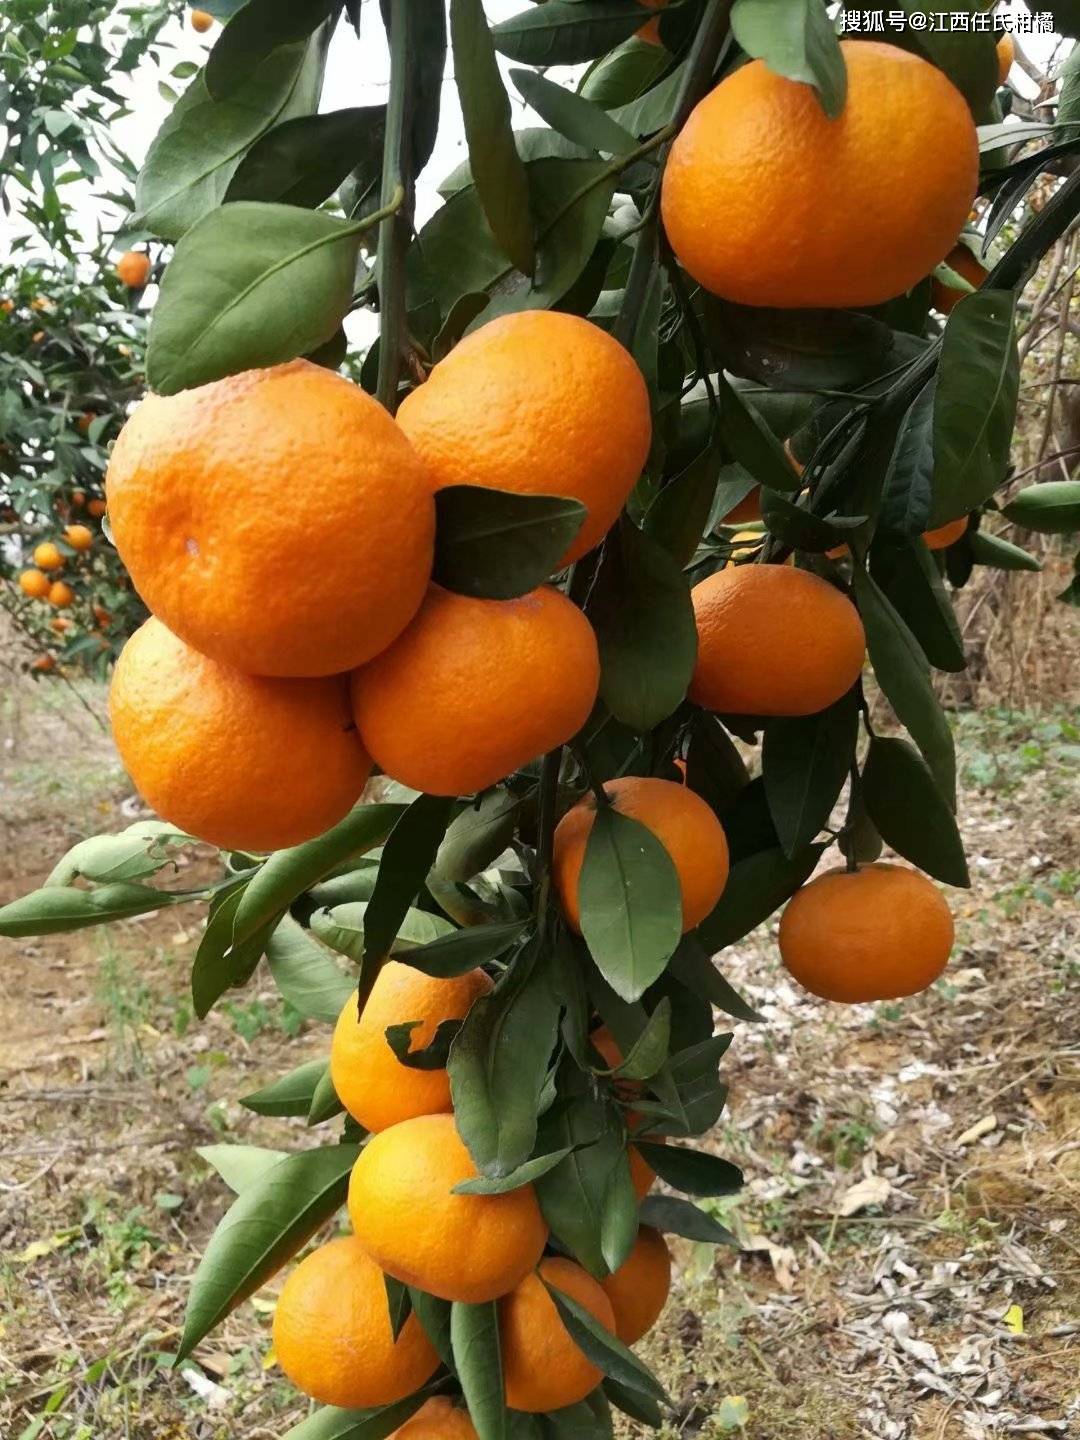 特早柑桔新品种阳光1号柑橘#阳光一号桔柚#阳光一号品种介绍